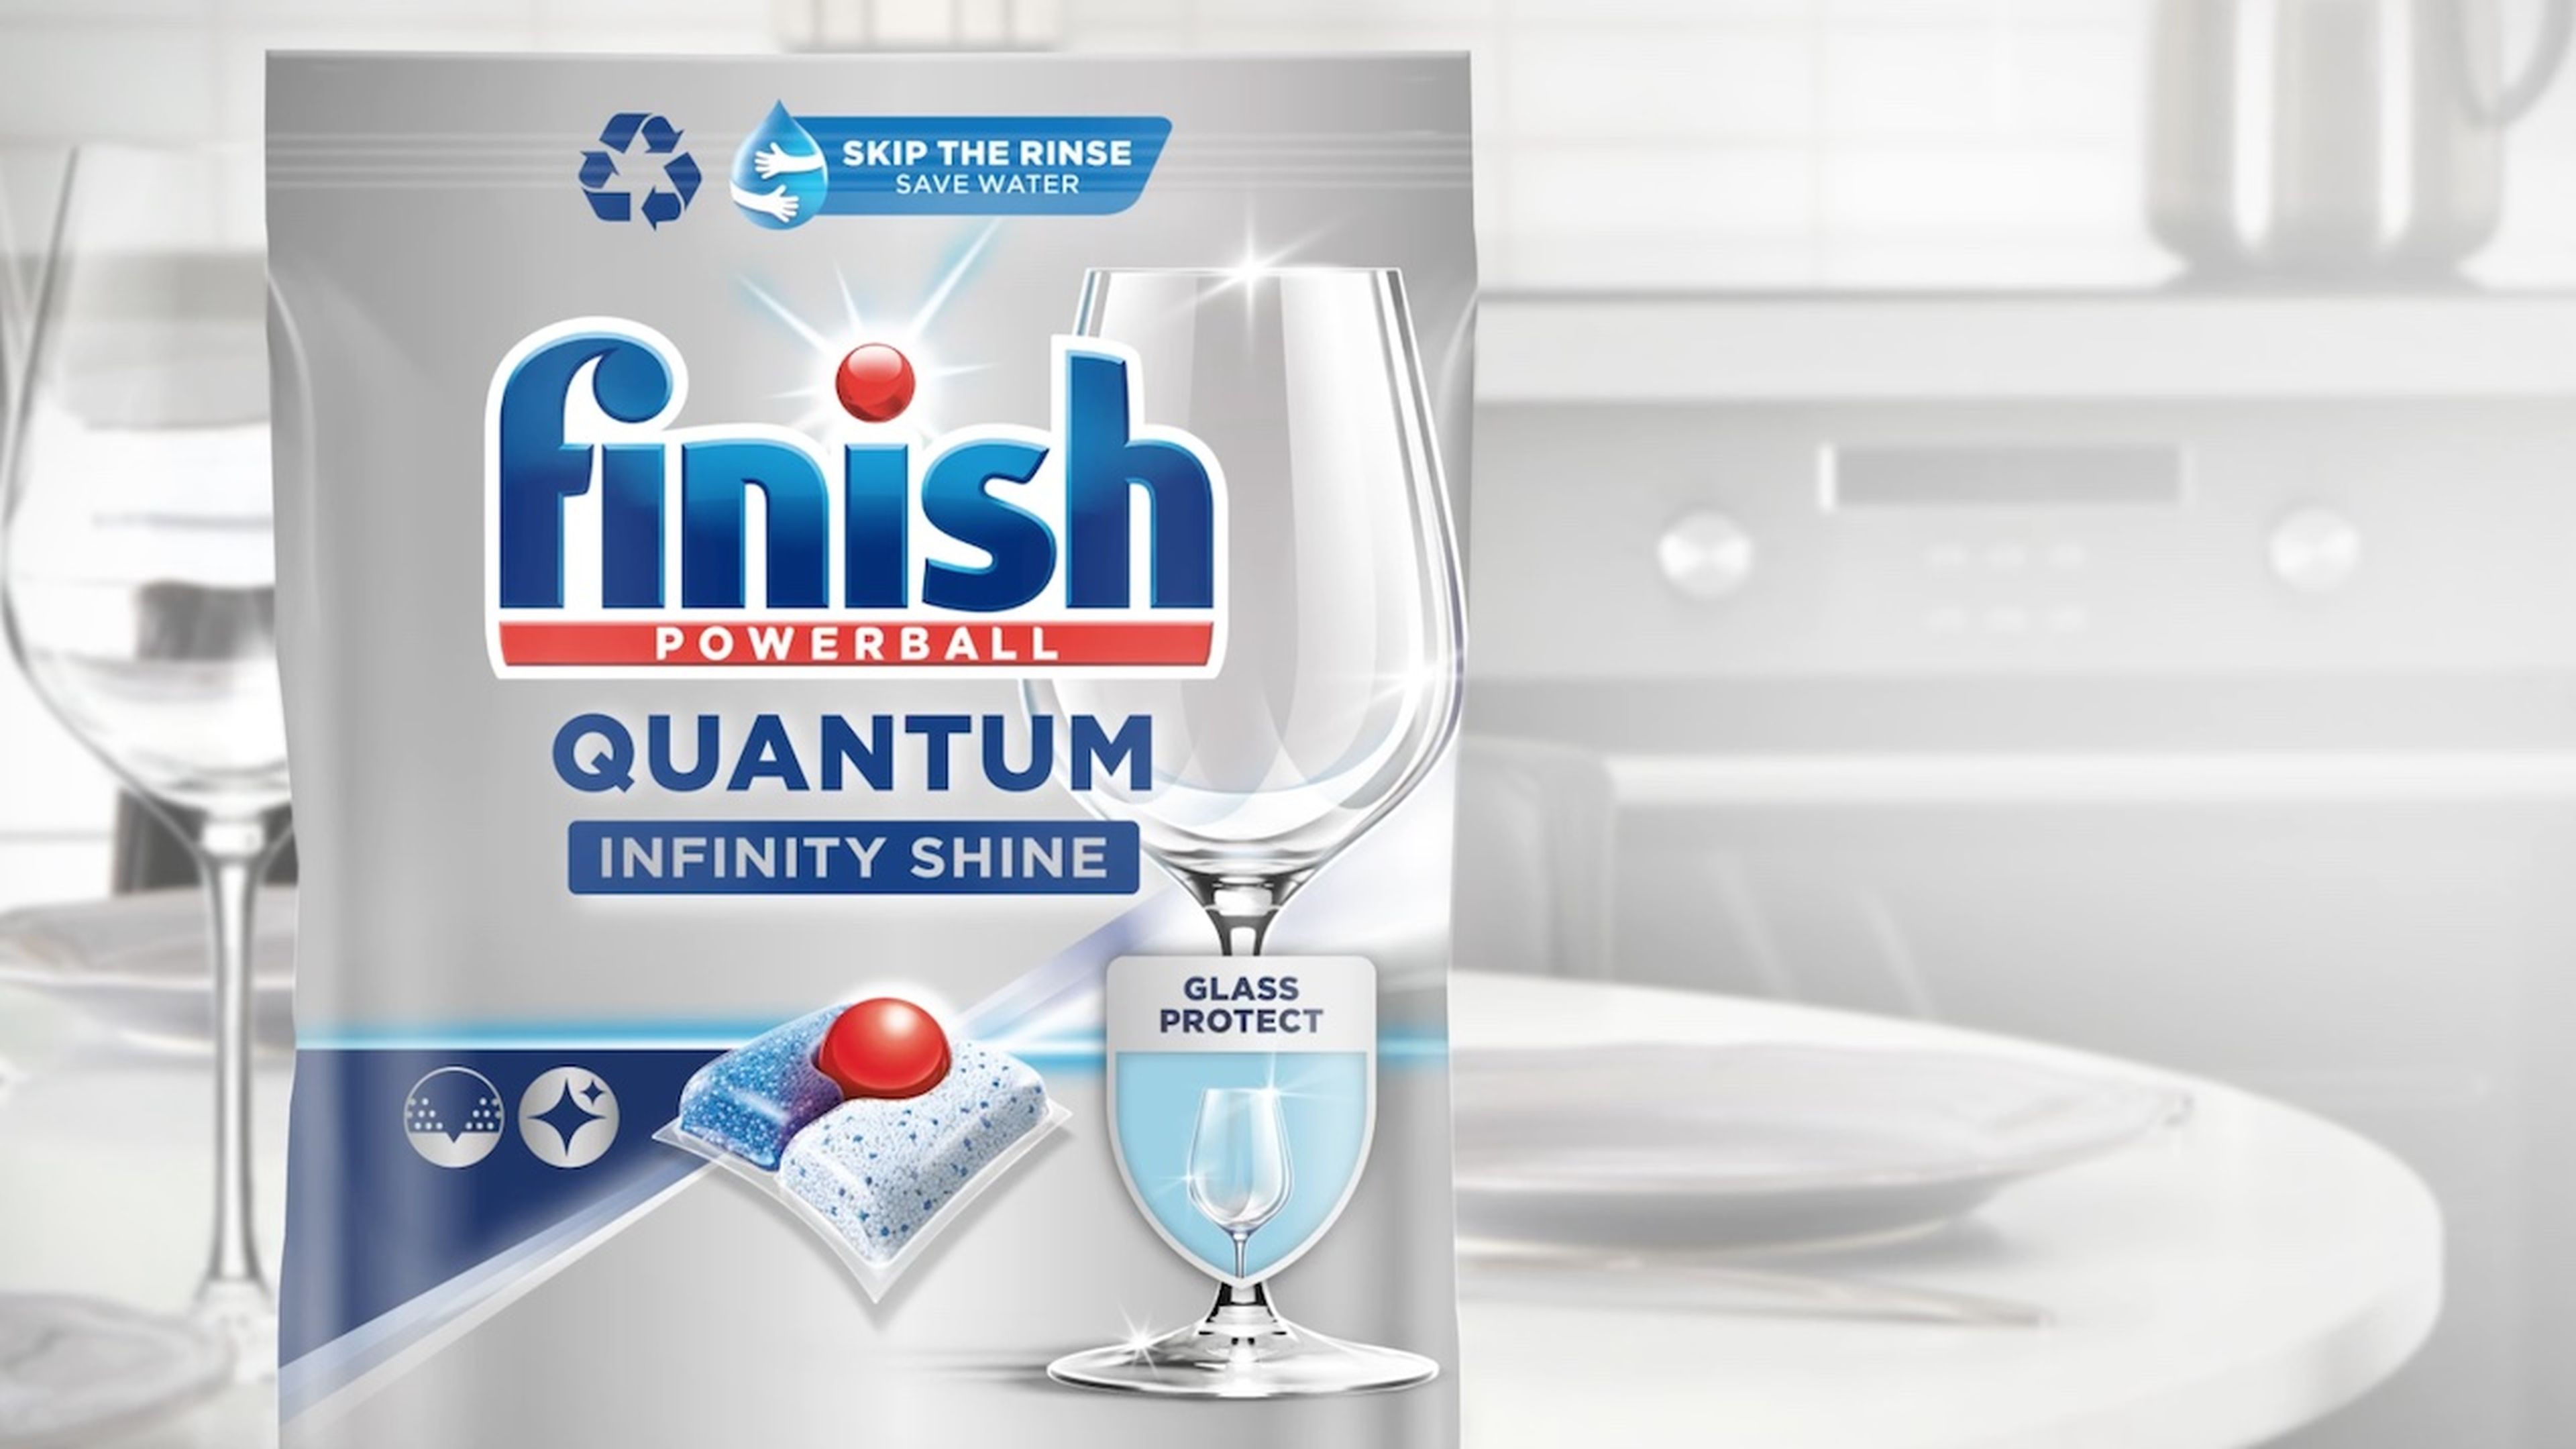 80 cápsulas lavavajillas Finish Powerball Ultimate Infinity Shine